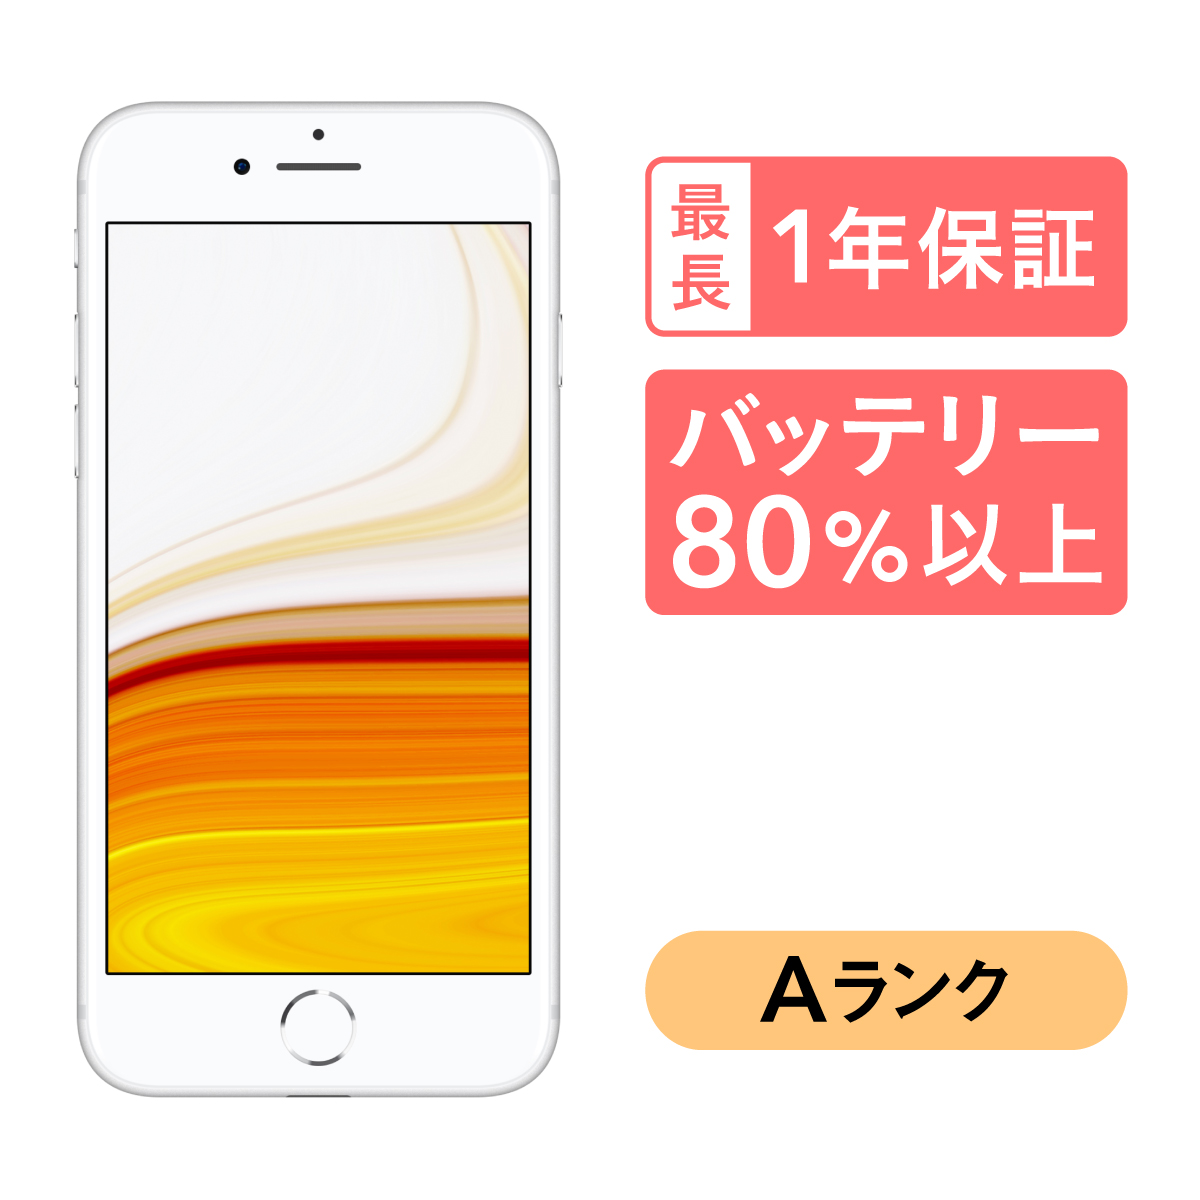 本命ギフト iPhone 8 ゴールド 64 GB docomo リール - lifeworks-inc.jp